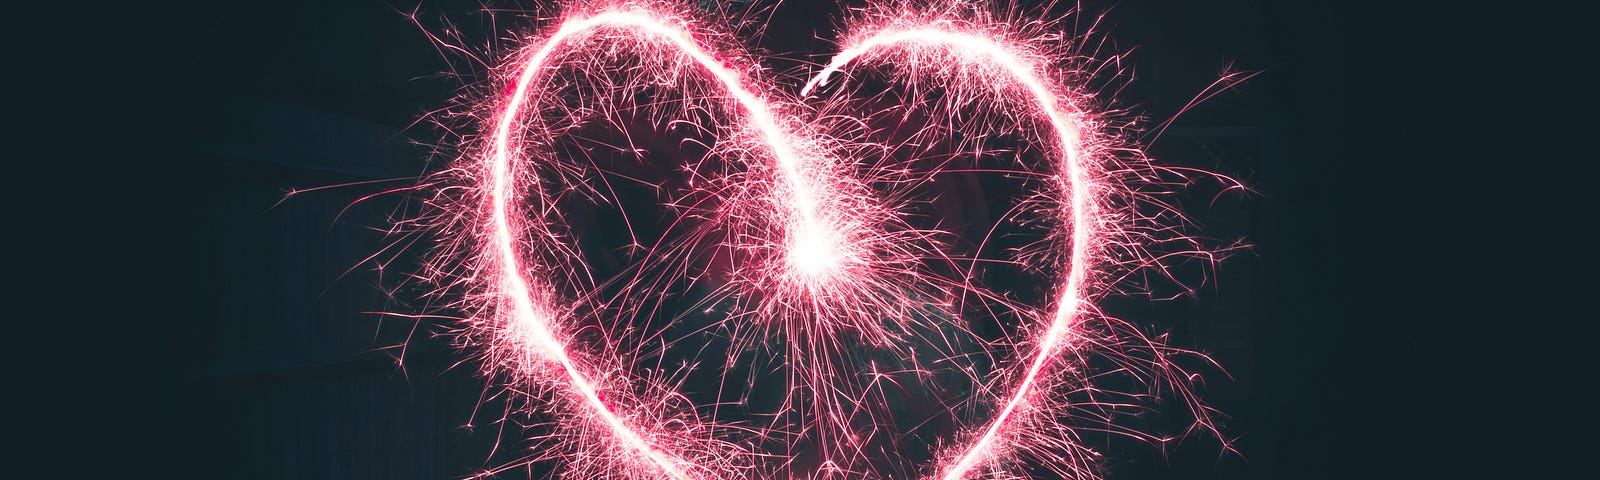 A sparkler heart